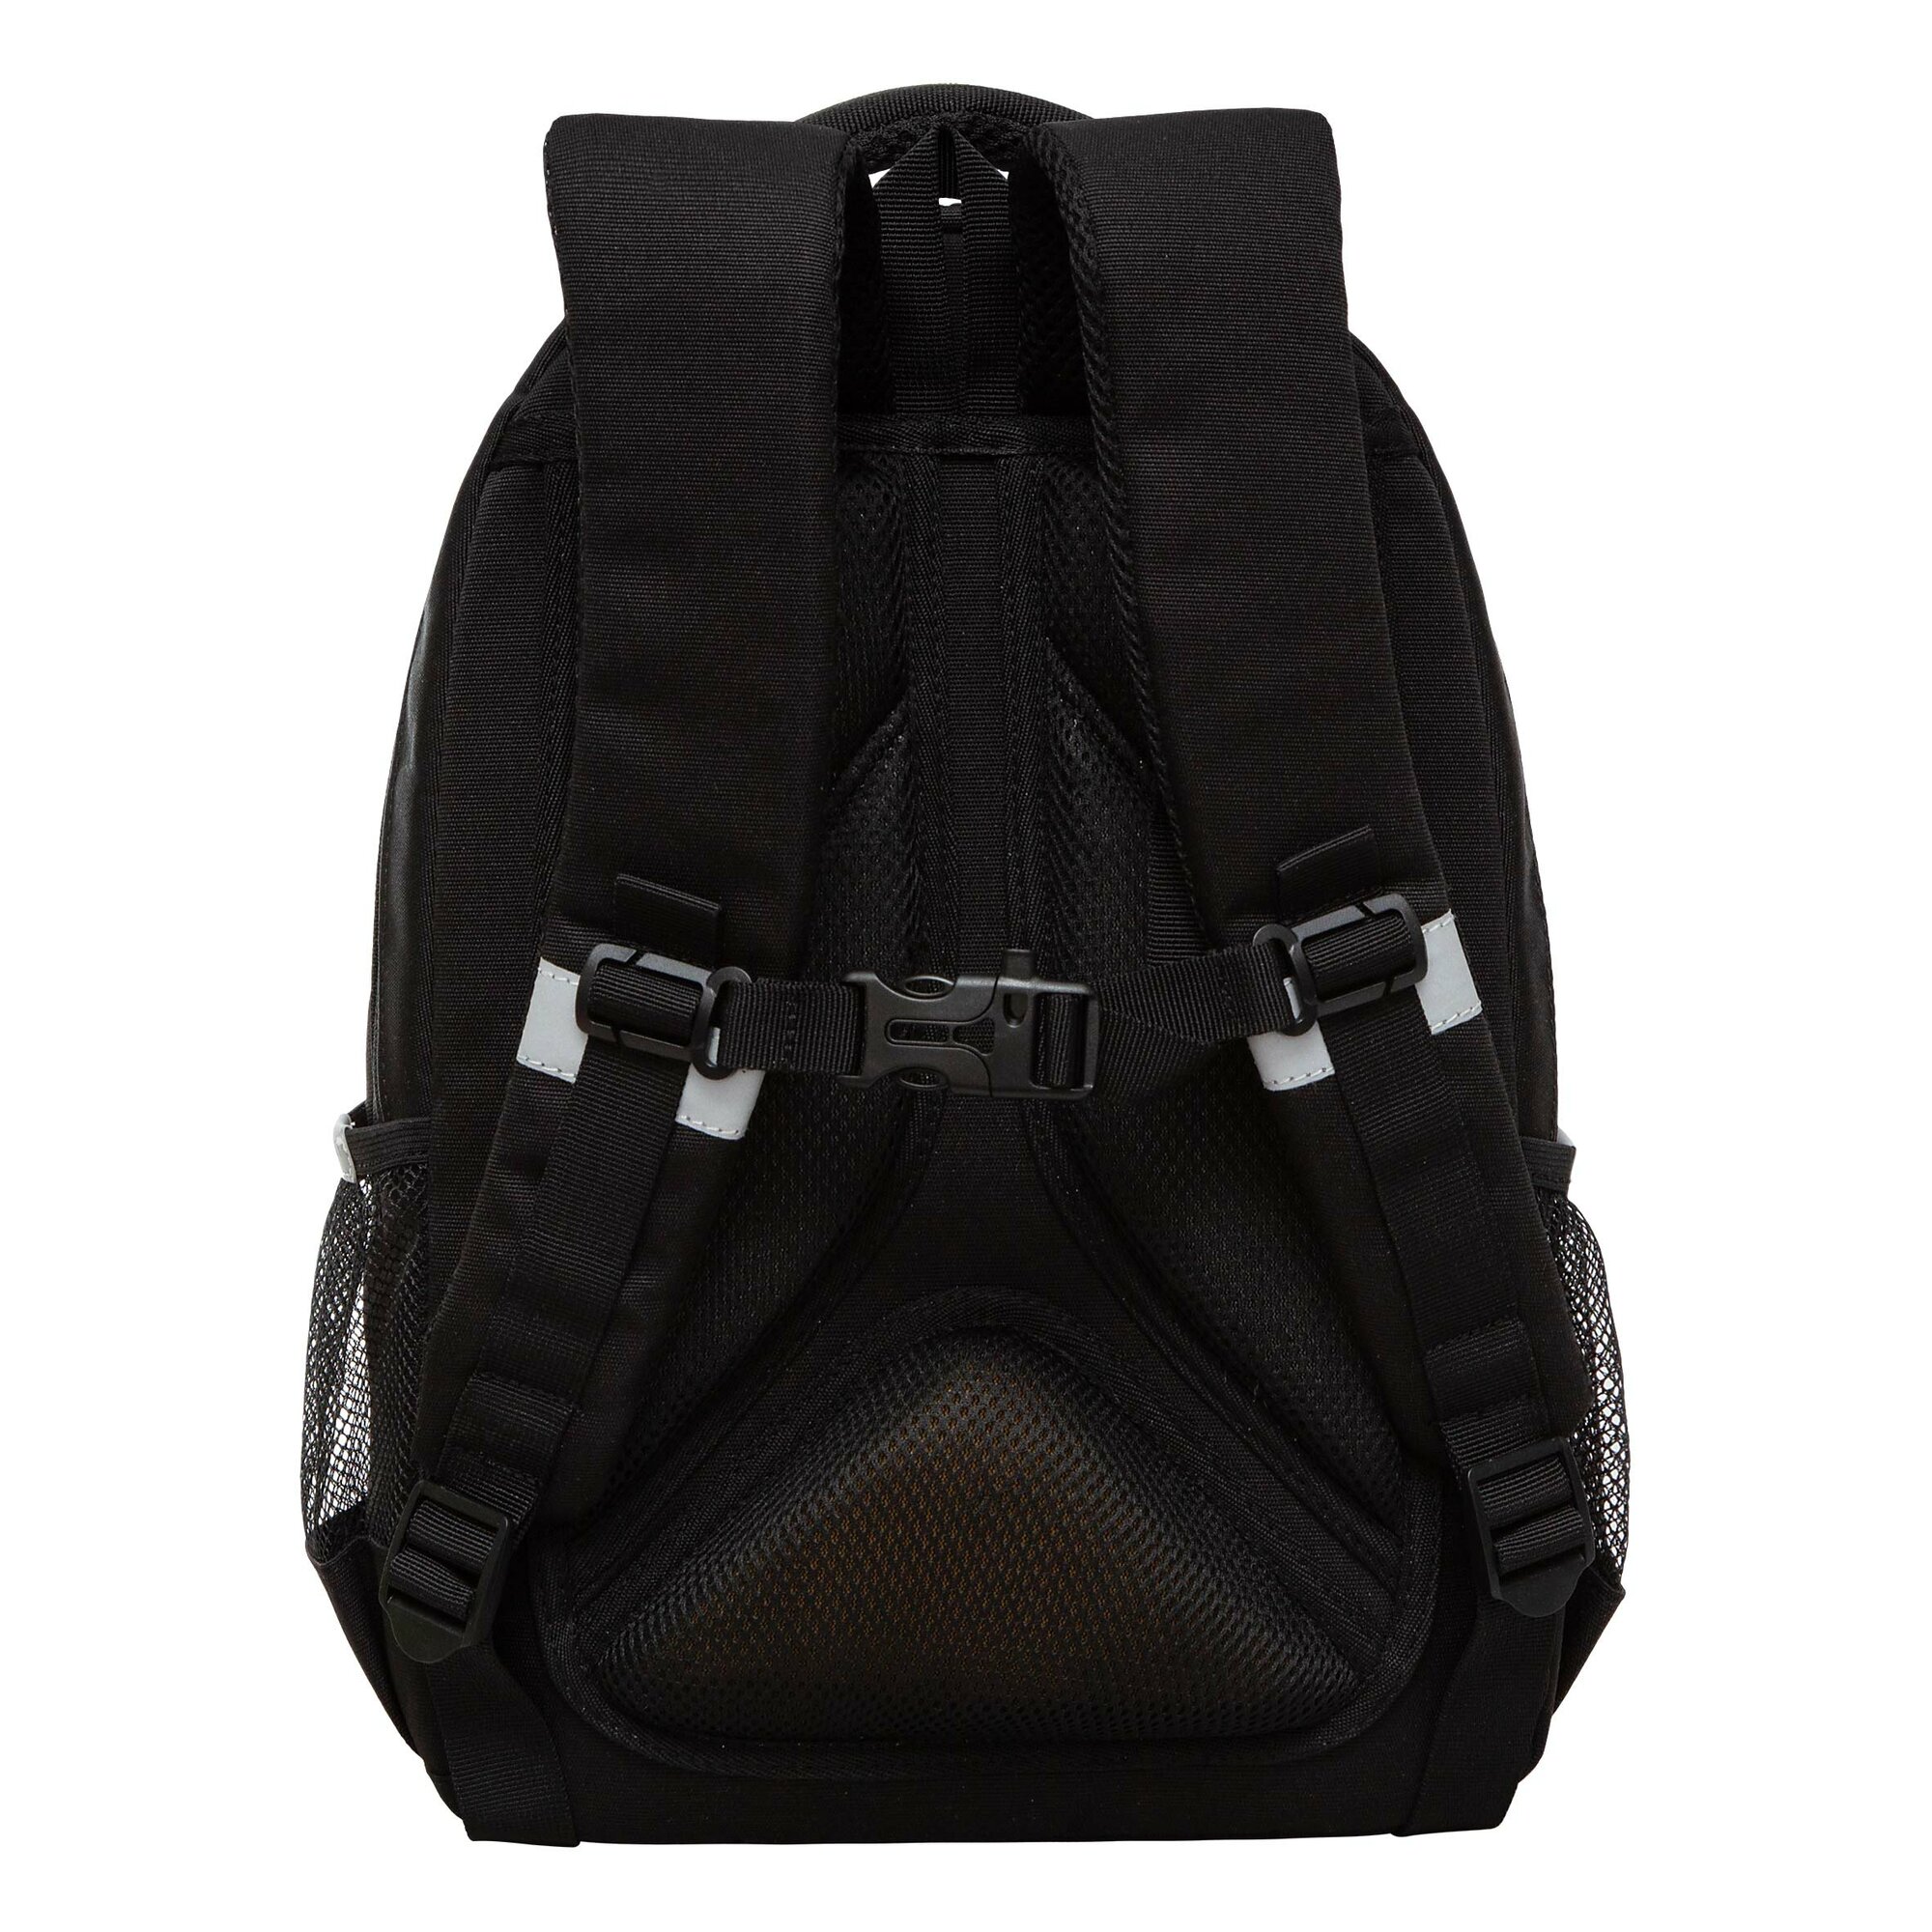 Рюкзак школьный GRIZZLY с карманом для ноутбука 13", анатомической спинкой, для девочки RG-460-2/2